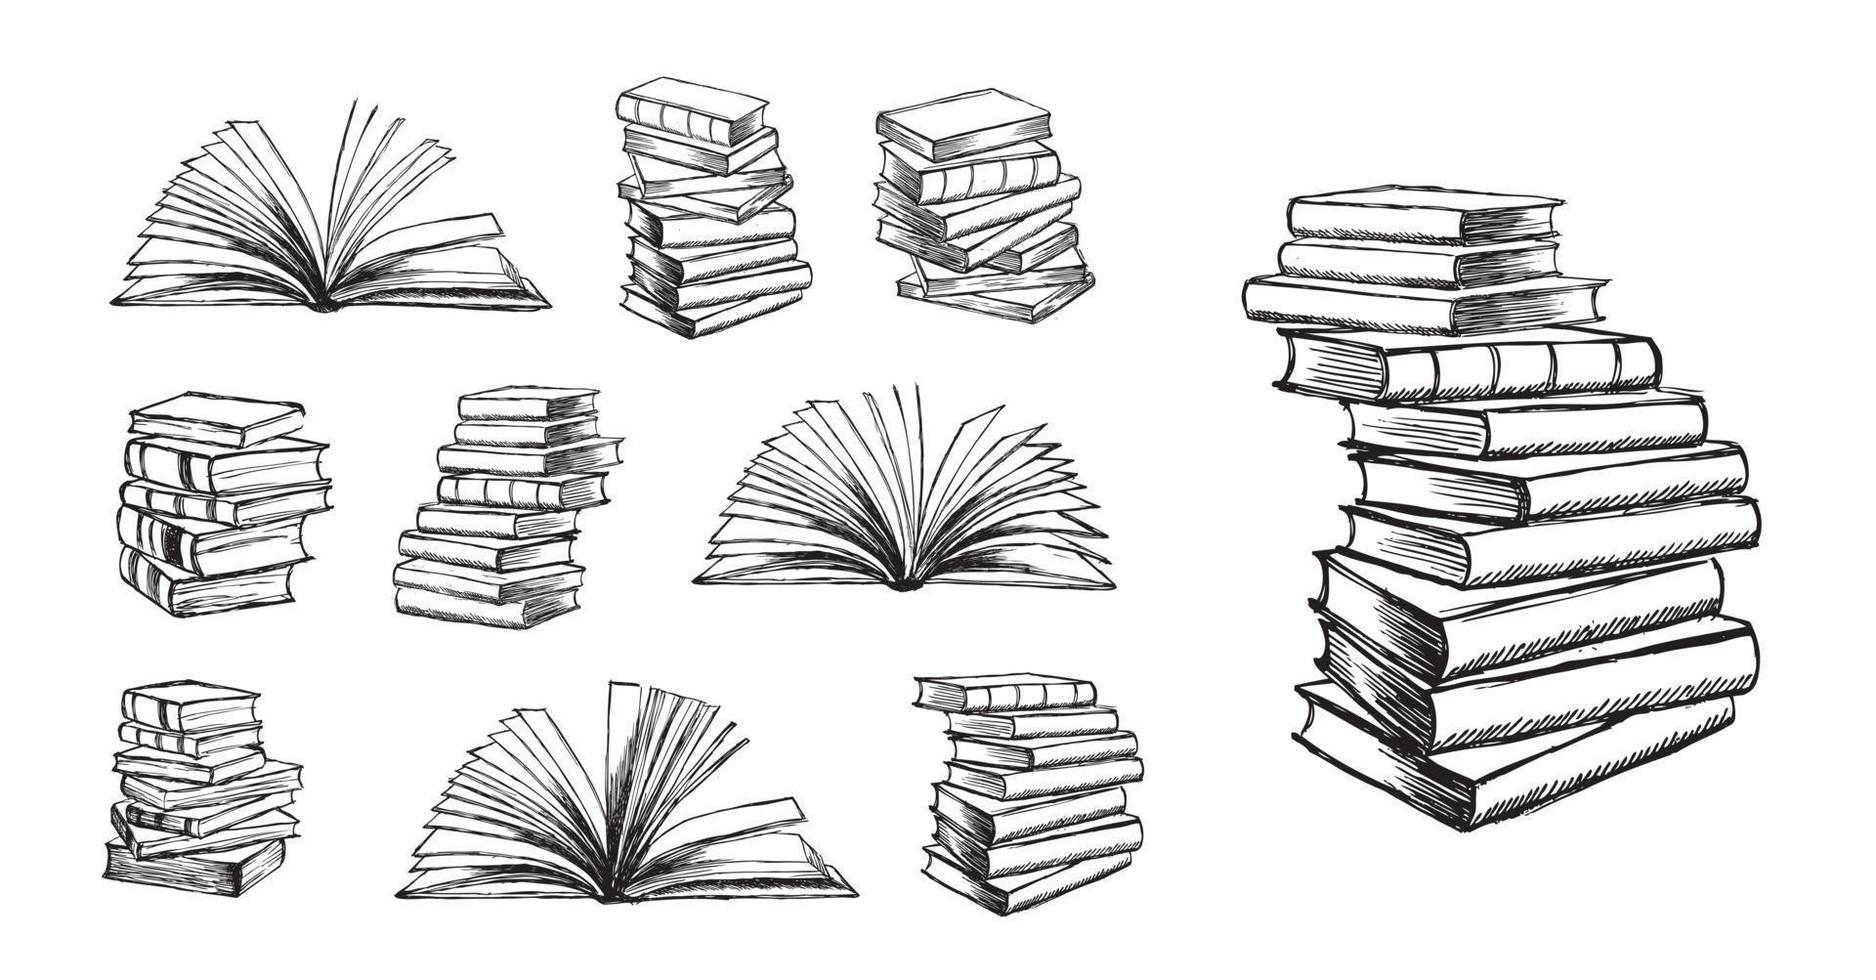 livros, ilustração desenhada à mão em estilo de desenho. vetor